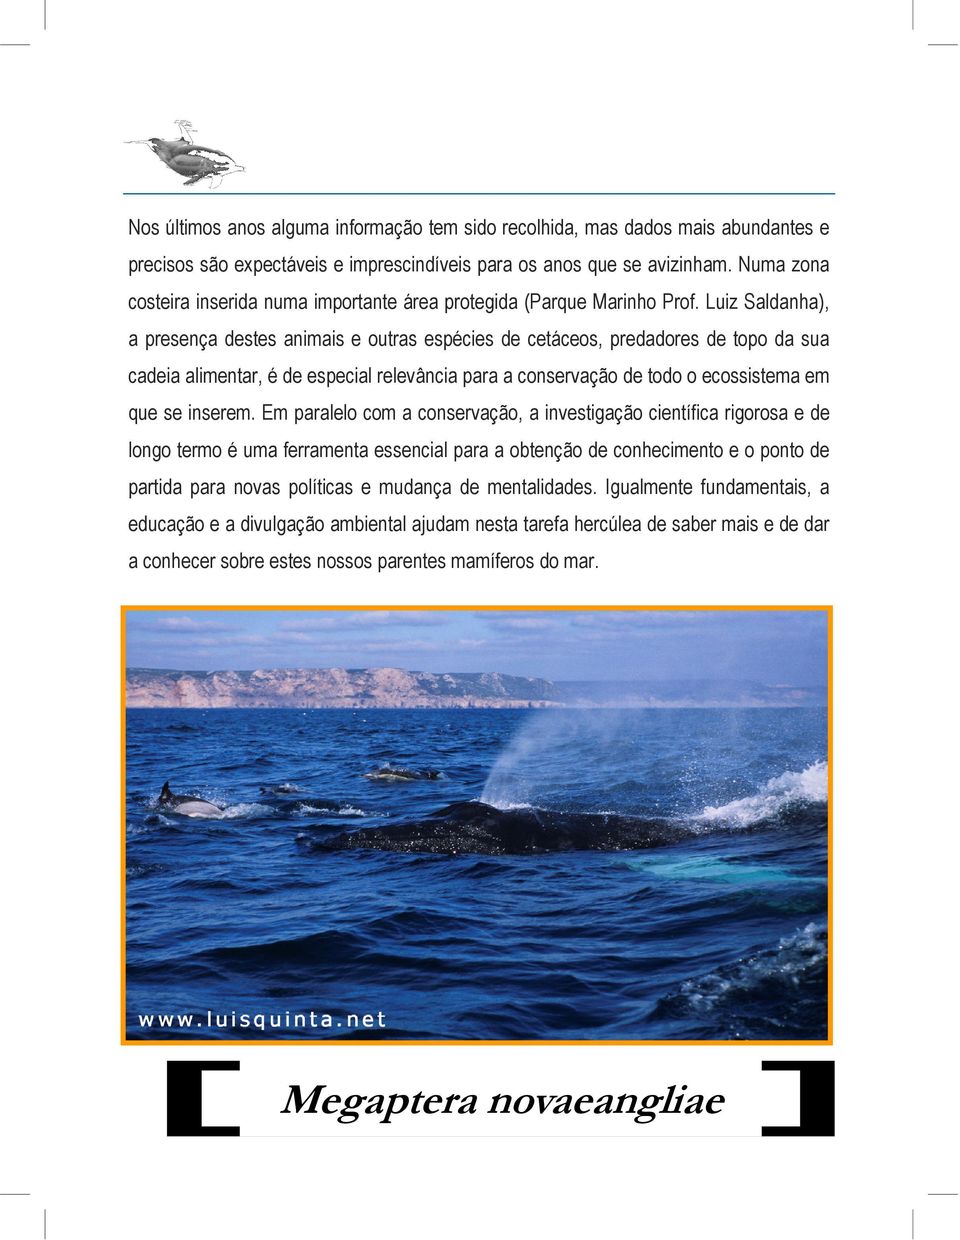 Luiz Saldanha), a presença destes animais e outras espécies de cetáceos, predadores de topo da sua cadeia alimentar, é de especial relevância para a conservação de todo o ecossistema em que se